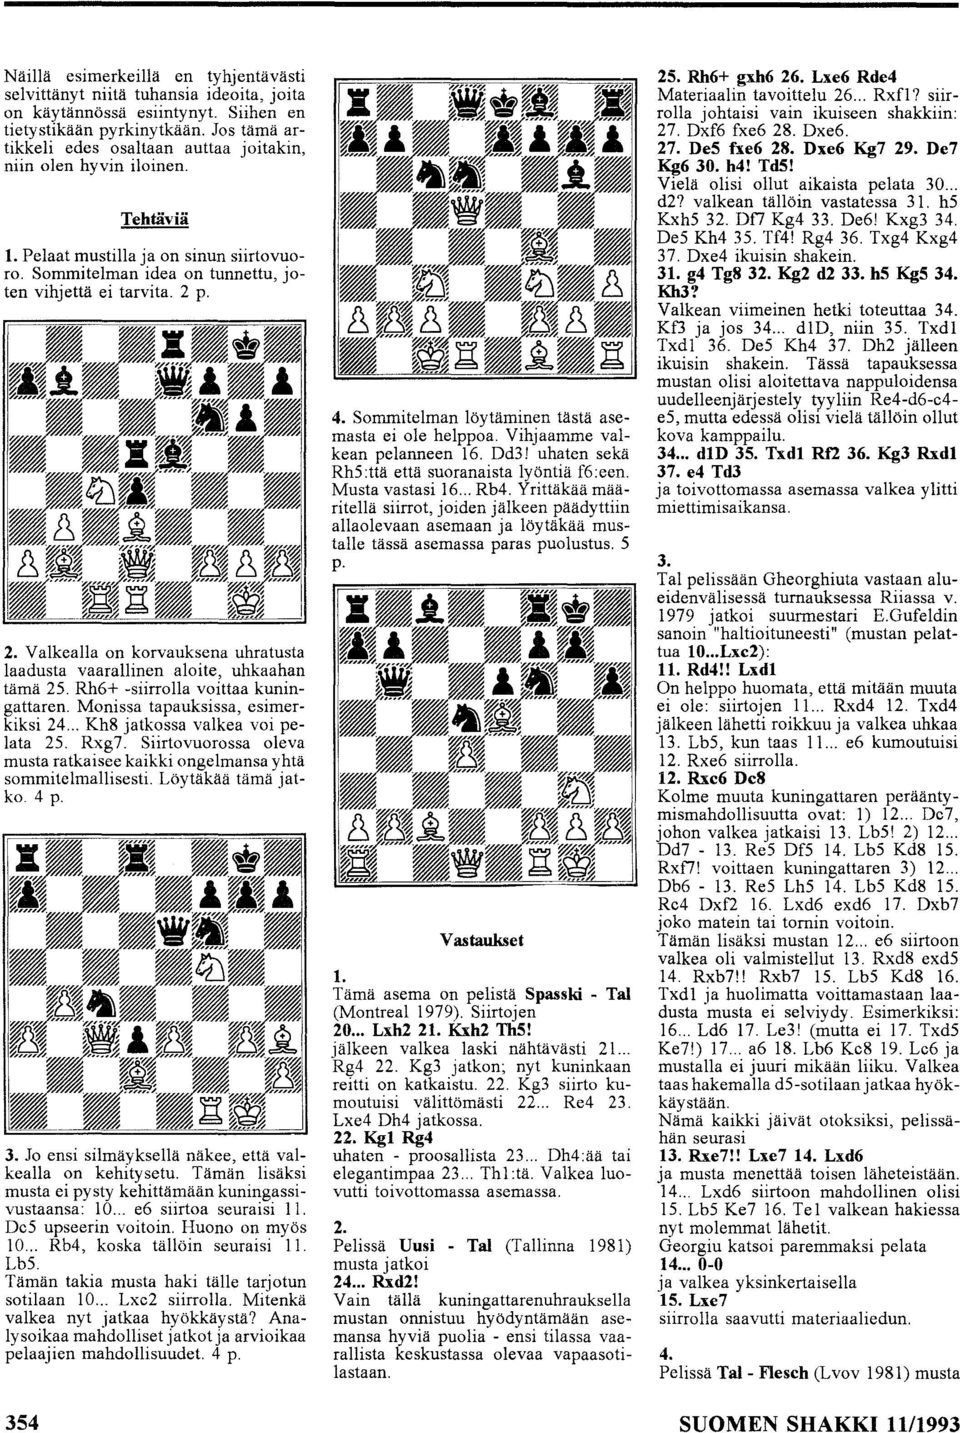 p. 2. VaIkealla on korvauksena uhratusta laadusta vaarallinen aloite, uhkaahan tämä 2S. Rh6+ -siirrolla voittaa kuningattaren. Monissa tapauksissa, esimerkiksi 24... Kh8 jatkossa valkea voi pelata 2S.